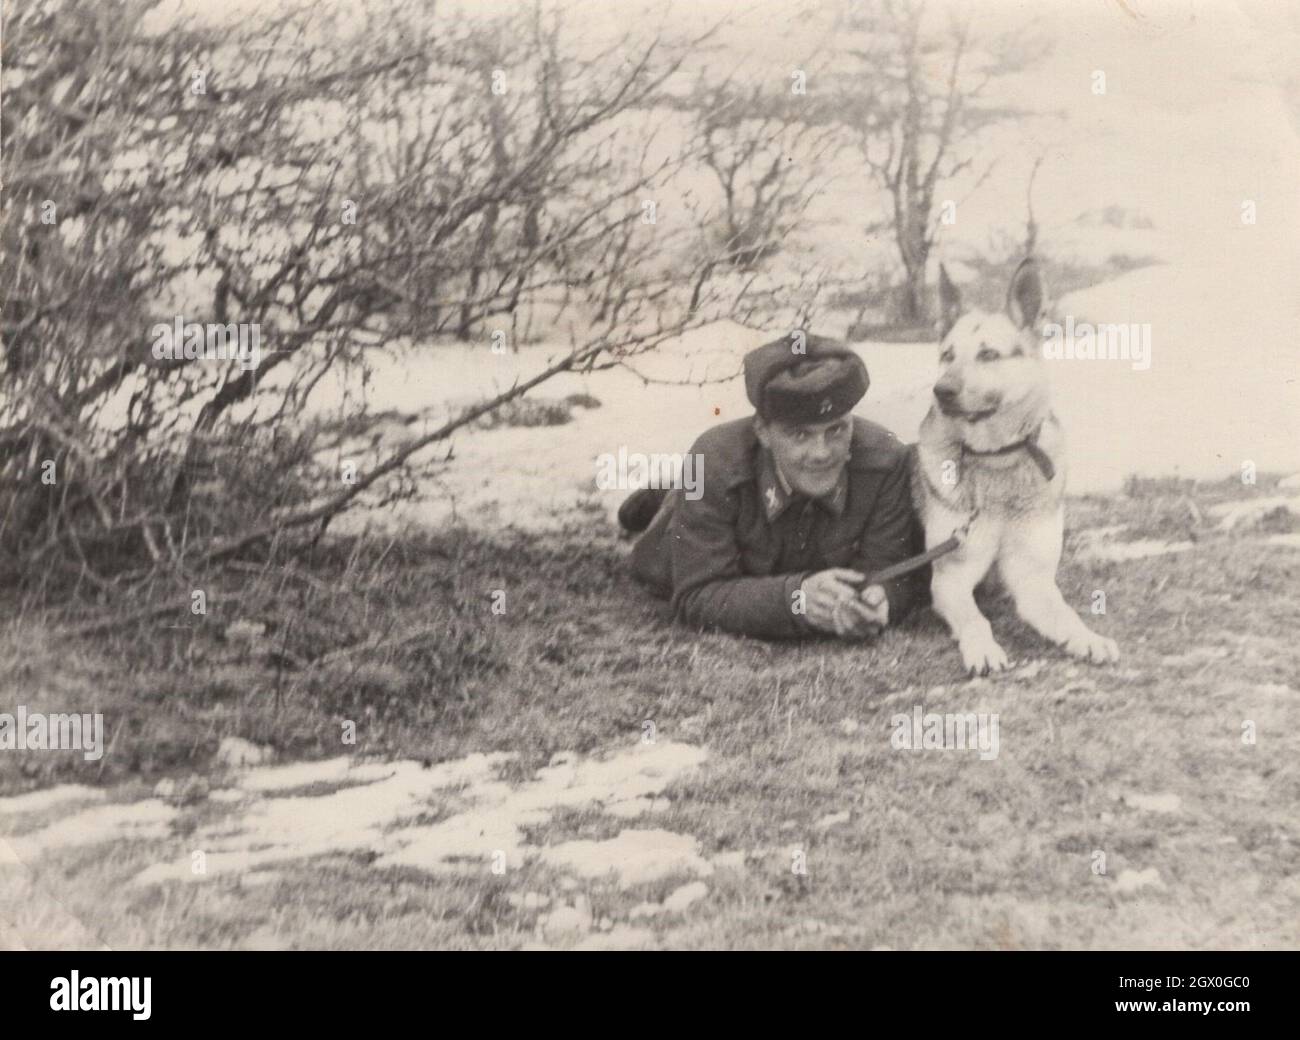 vintage / retro Army / militare tedesco cane pastore serie 2. Un soldato sta posando con il suo cane (Pastore tedesco) sul campo intorno agli anni '50. Egli proviene dall'Europa orientale, forse dall'Ungheria. Fonte: Fotografia originale Foto Stock